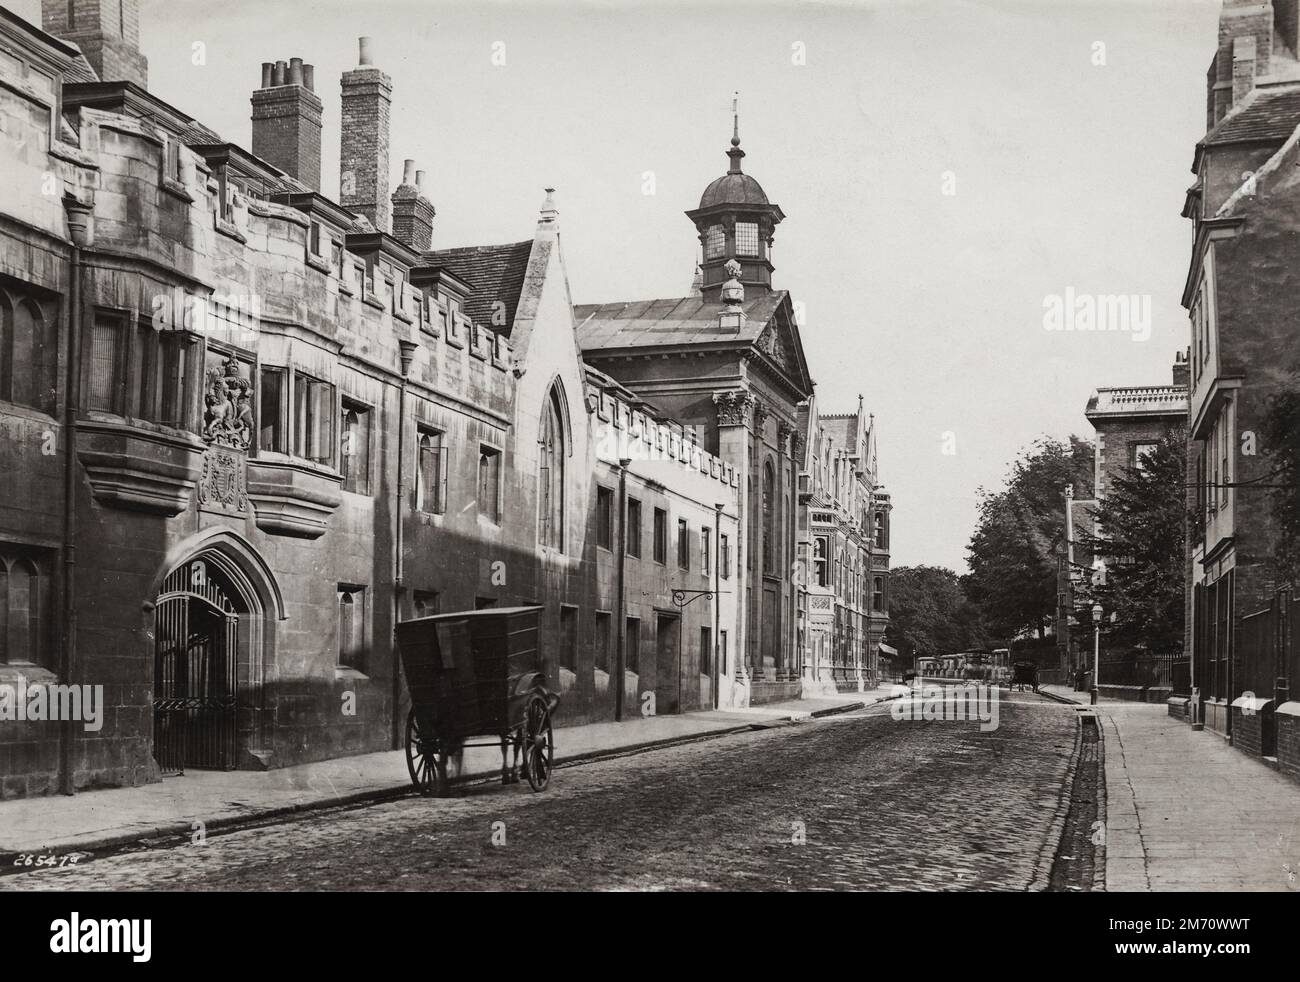 Photographie vintage de la fin du 19th/début du 20th siècle: 1890 - Pembroke College, Cambridge, Cambridgeshire Banque D'Images